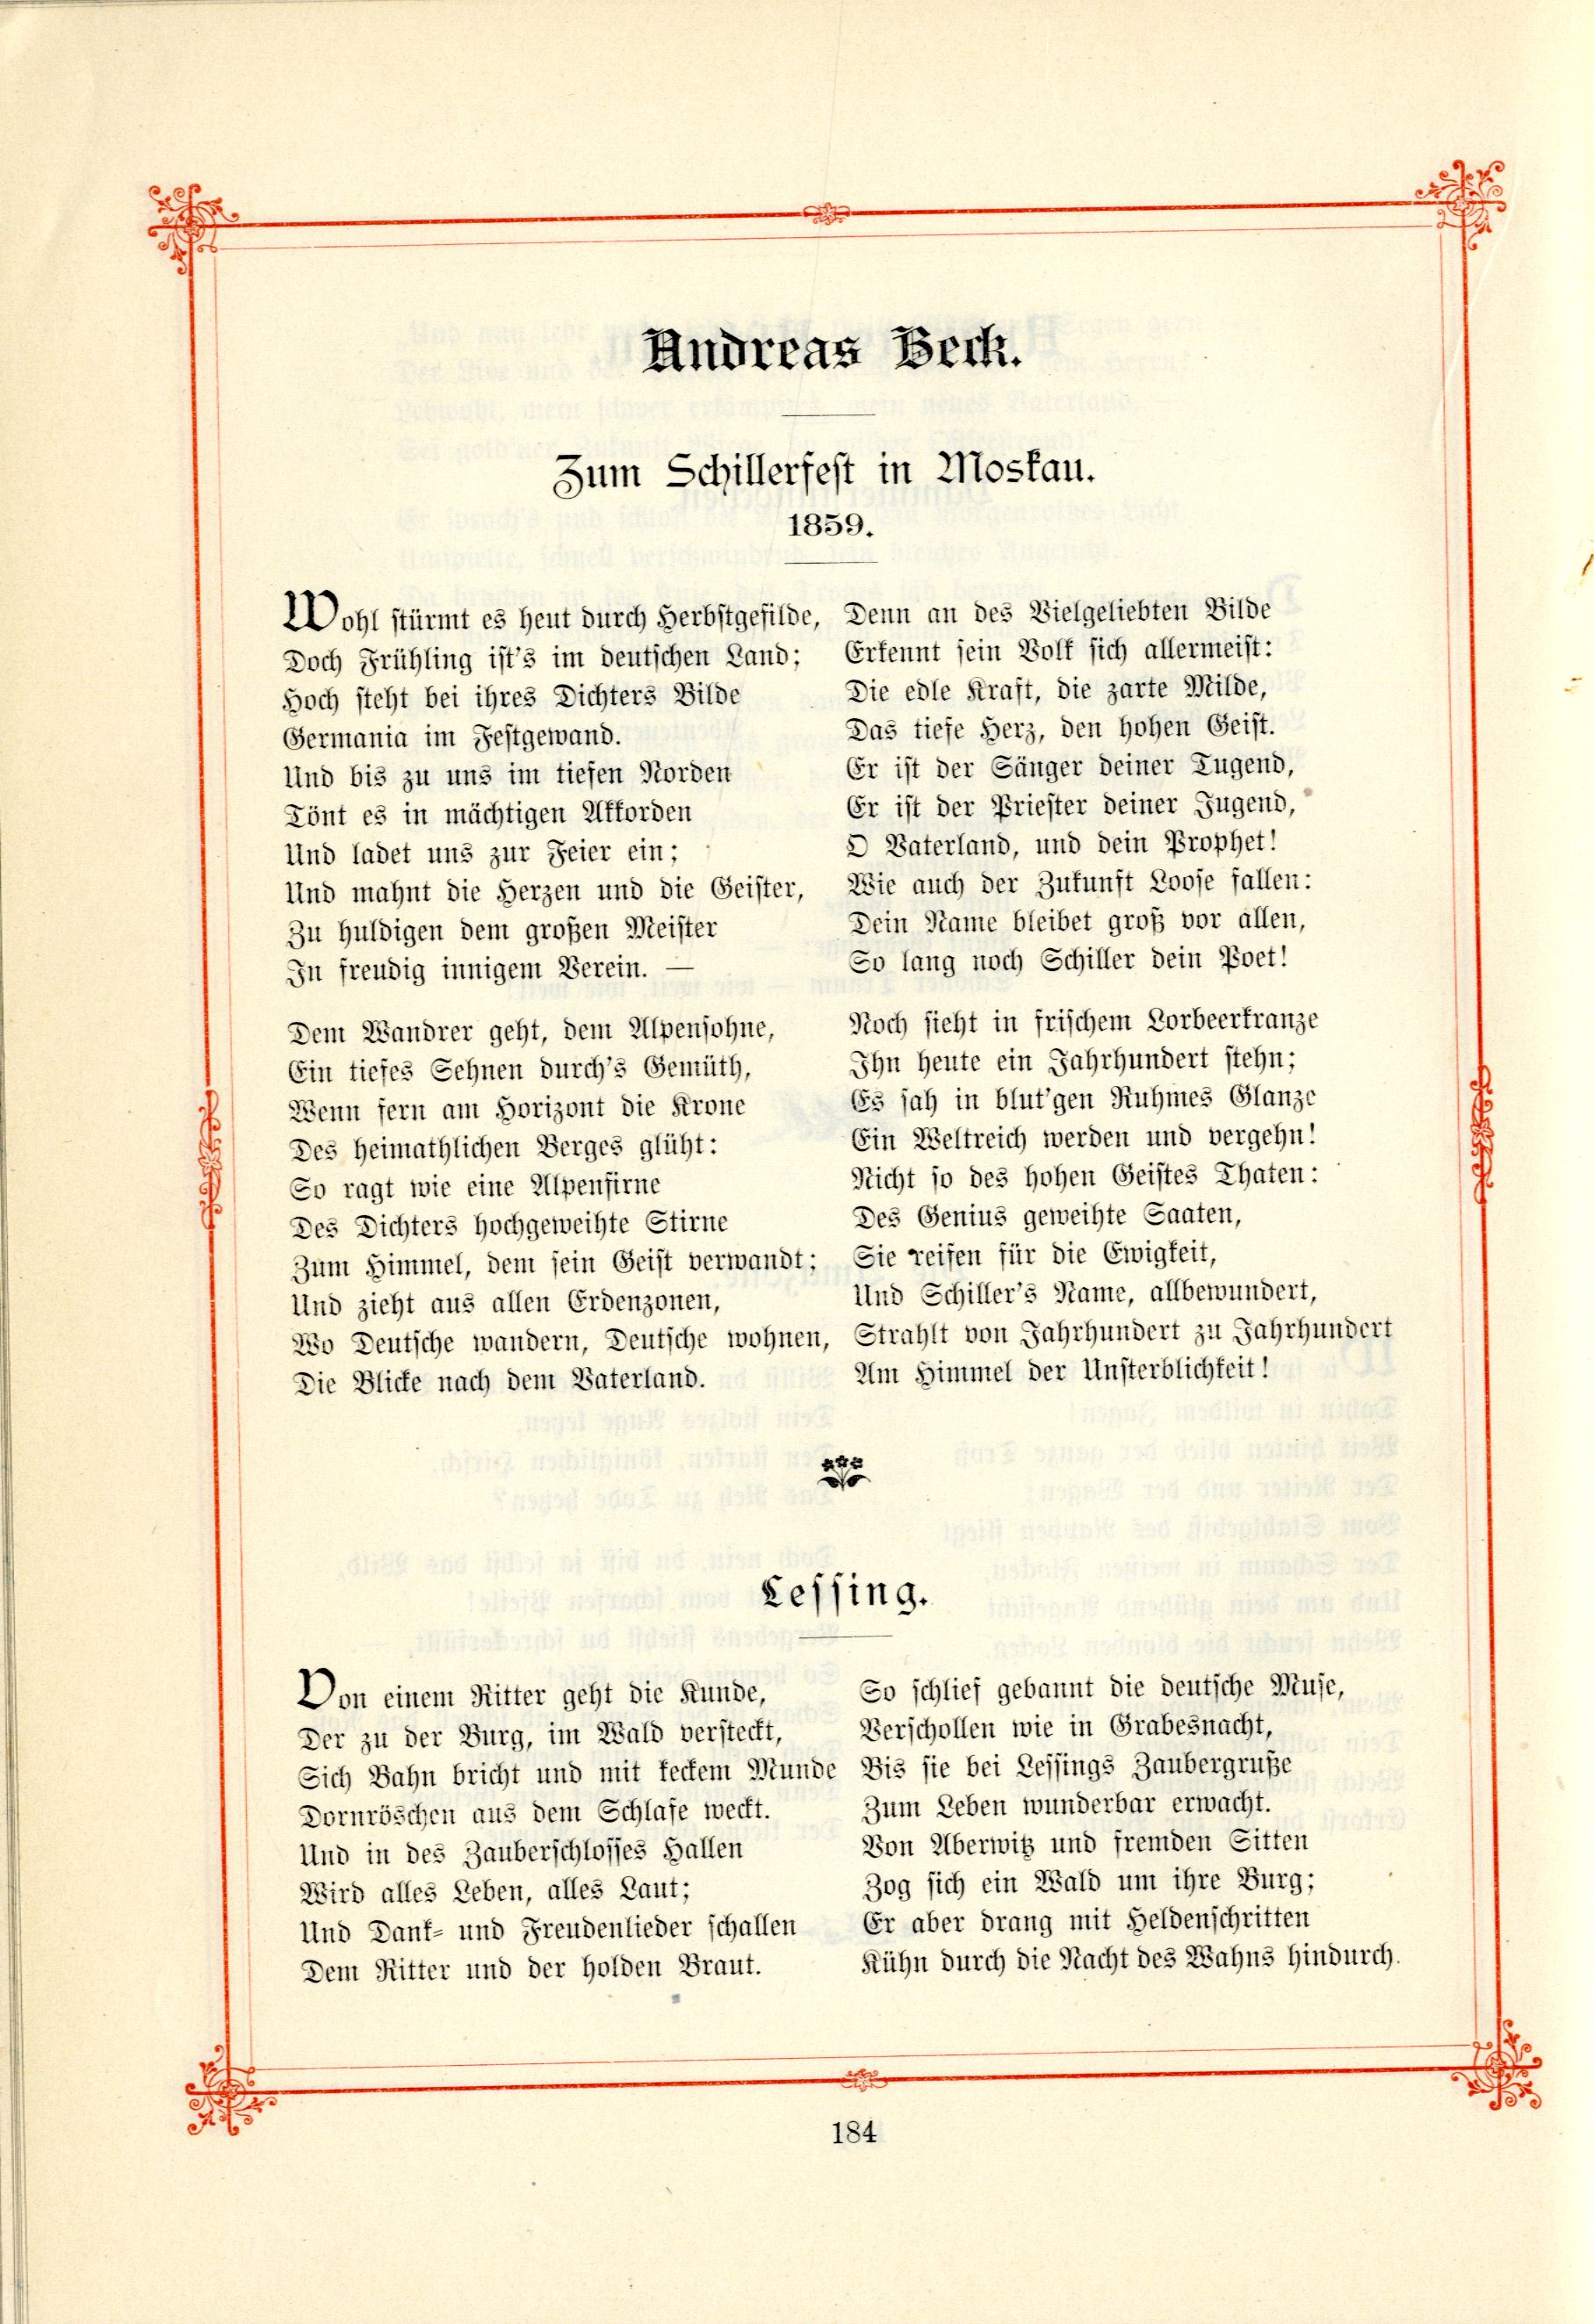 Zum Schillefest in Moskau (1895) | 1. (184) Основной текст